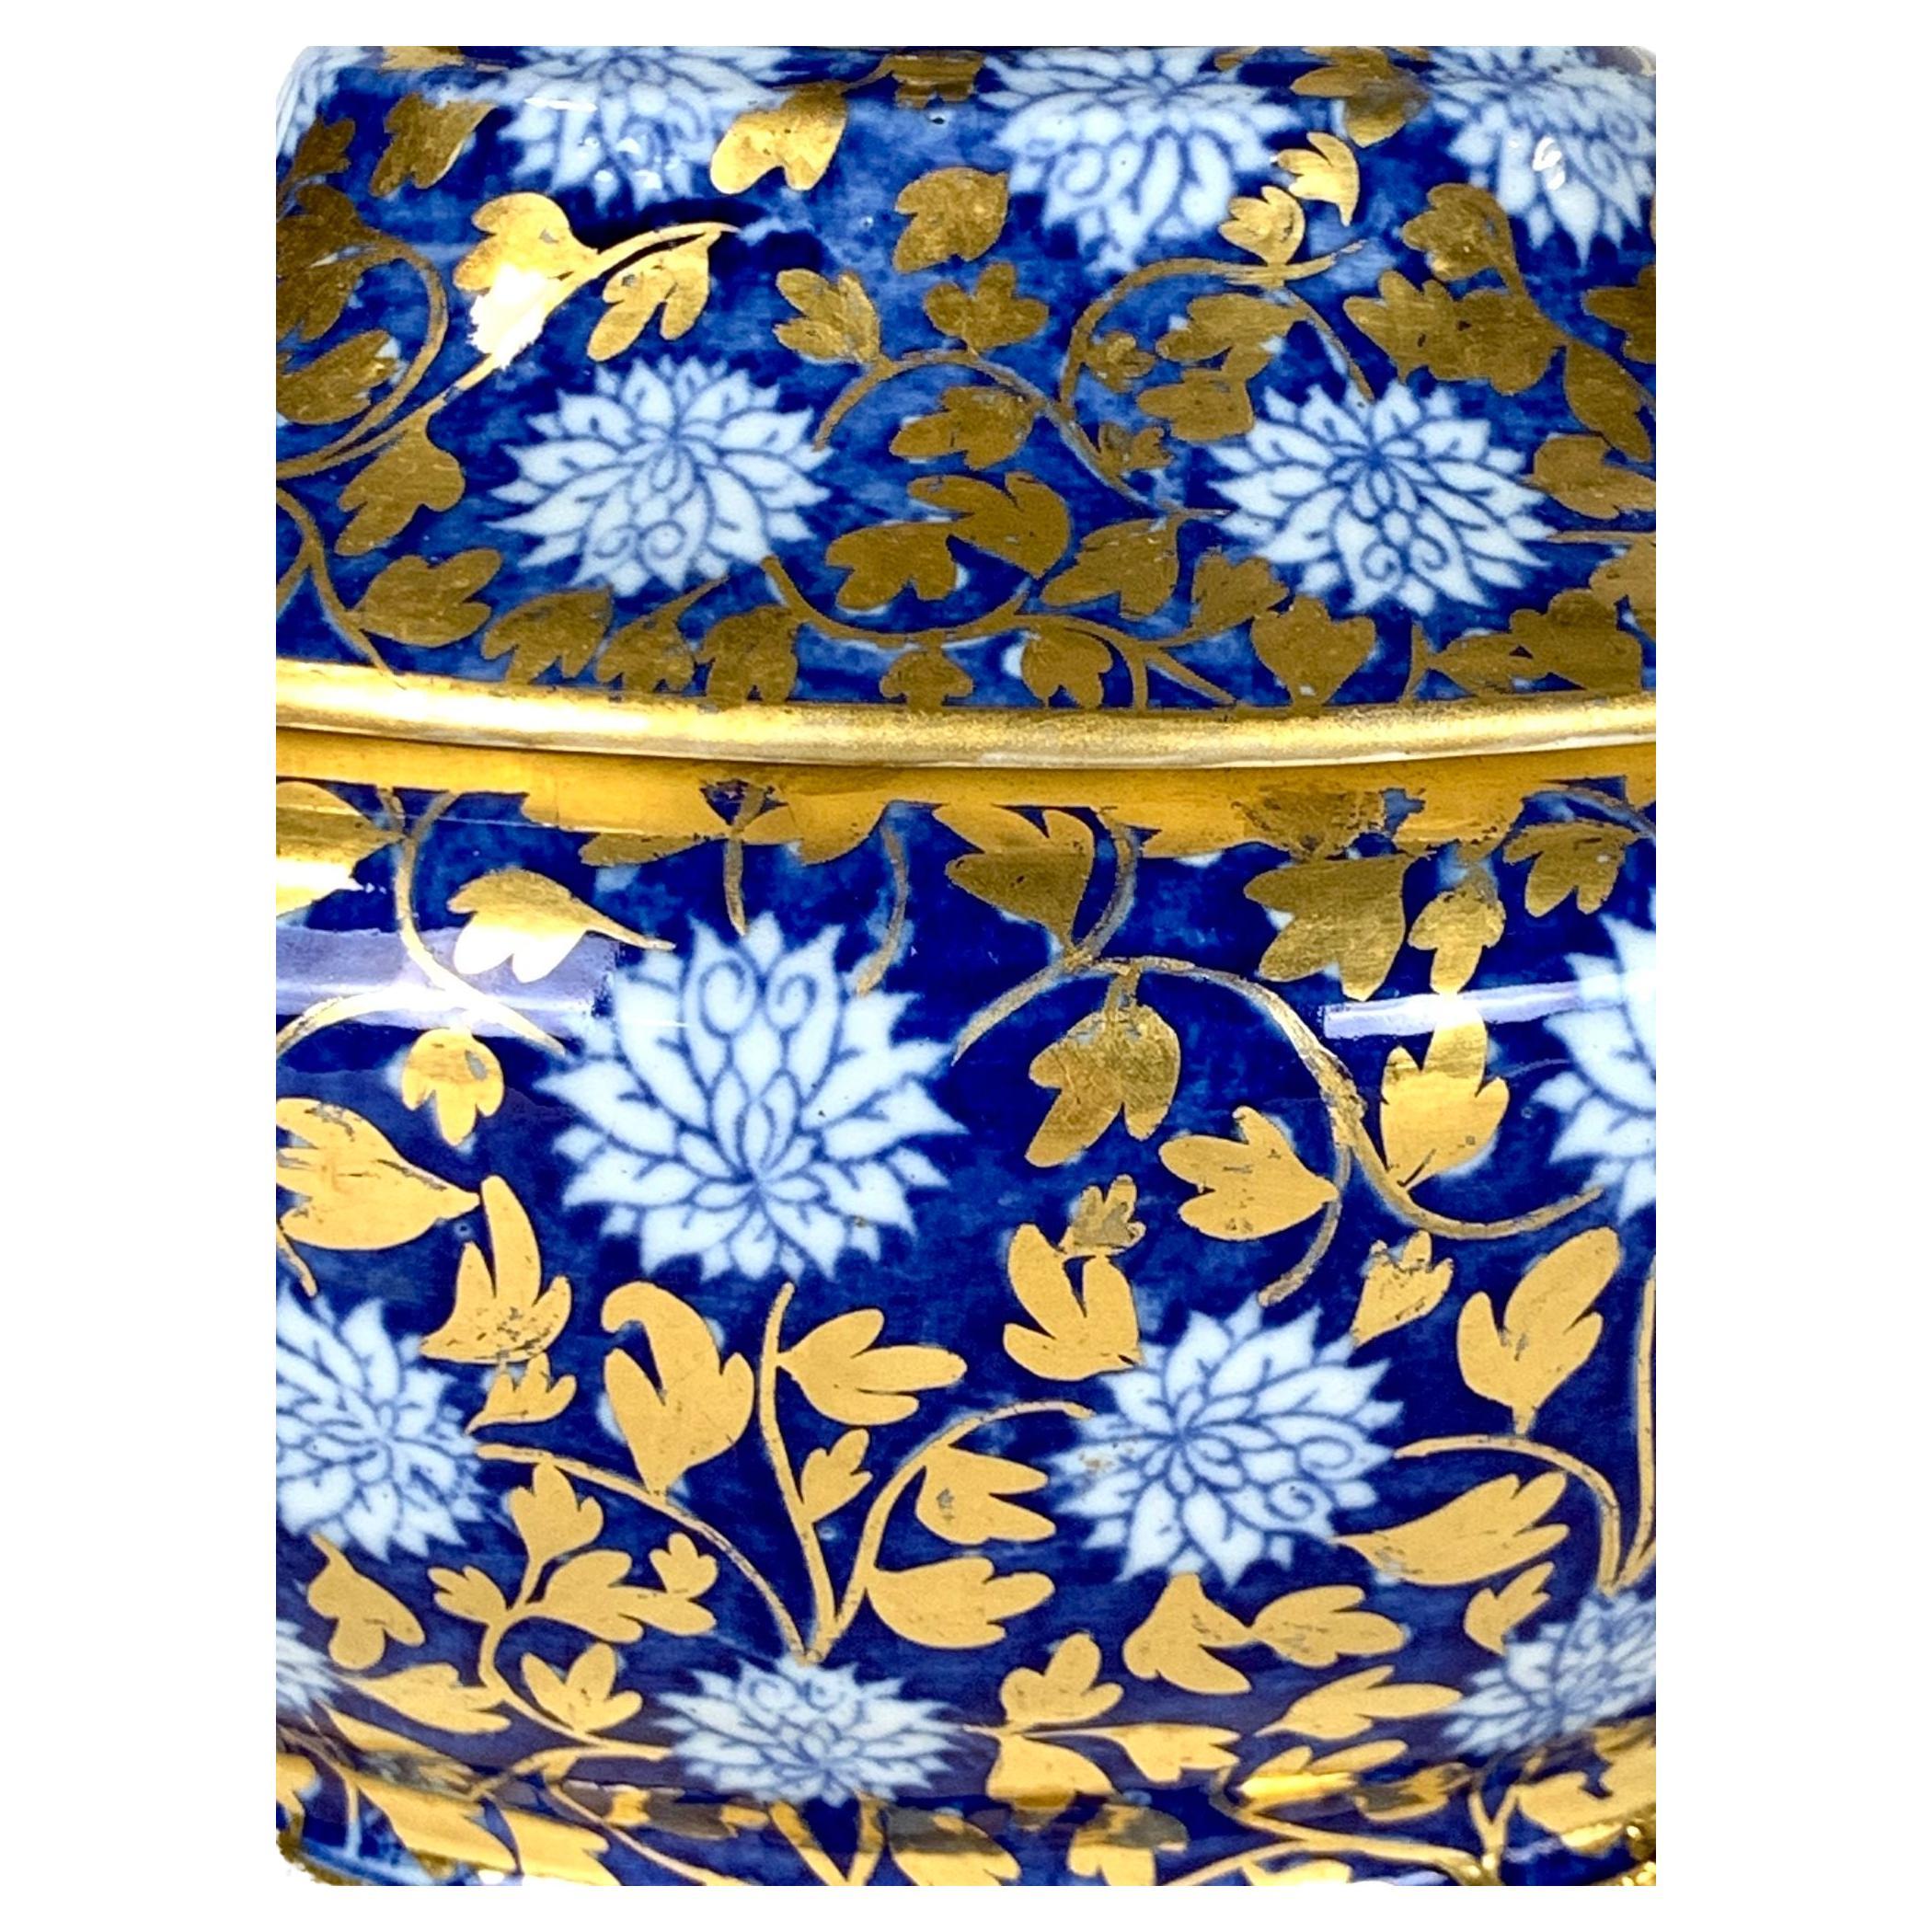 Ce service à dessert en porcelaine peint à la main présente l'exquis motif du chrysanthème bleu, qui associe le bleu profond à l'allure de l'or.
C'est une combinaison fabuleuse !
Les feuilles de chrysanthème sont richement dorées, créant un